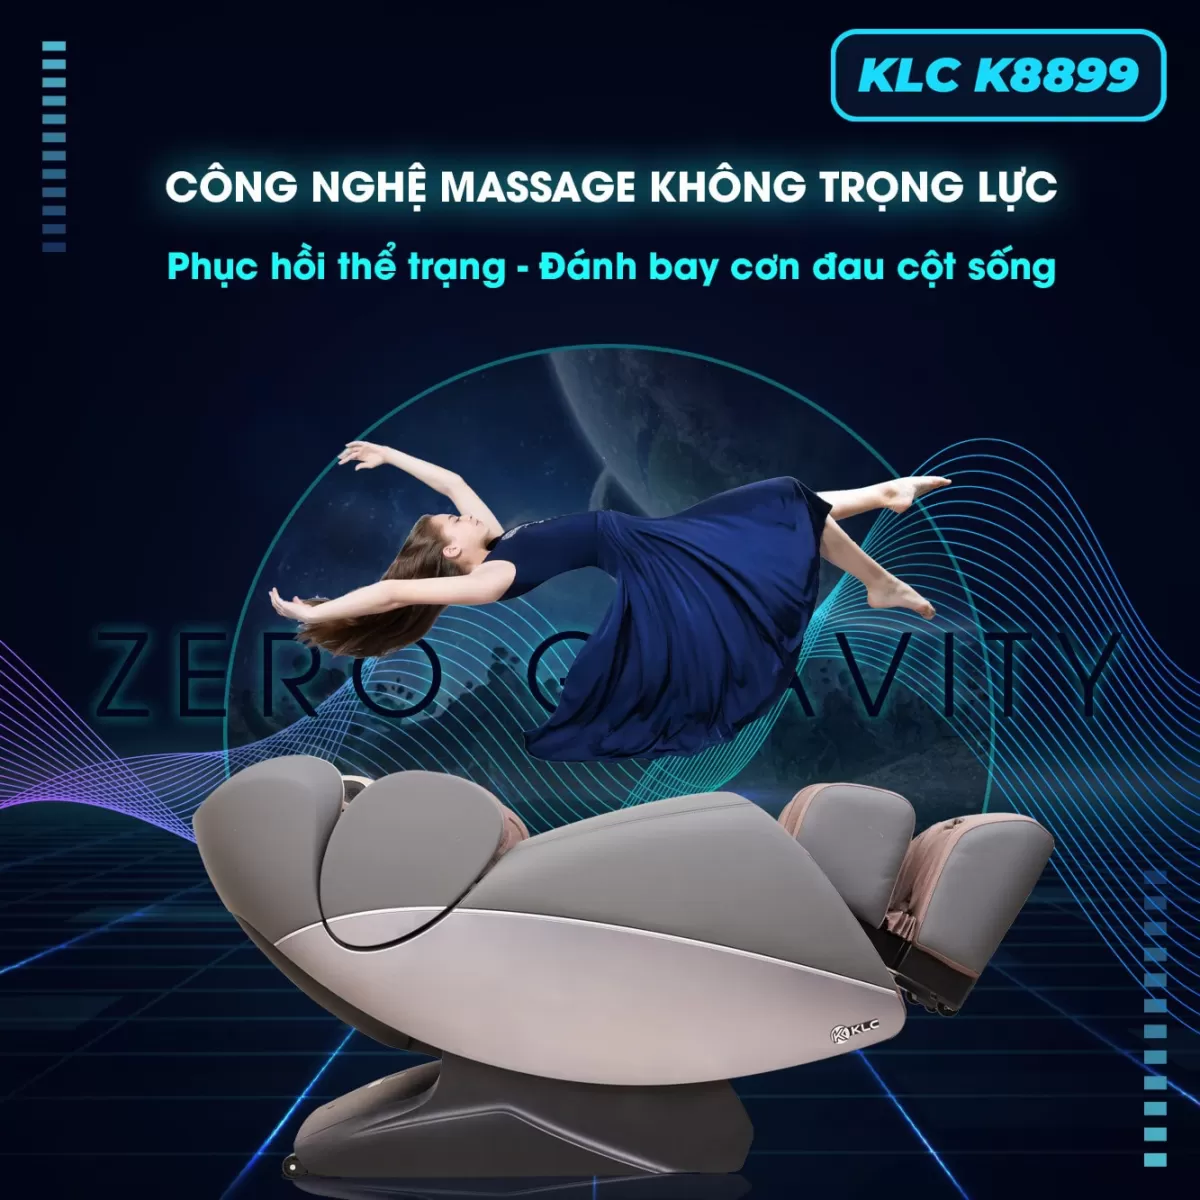 chế độ không trọng lực của Ghế Massage KLC K8899